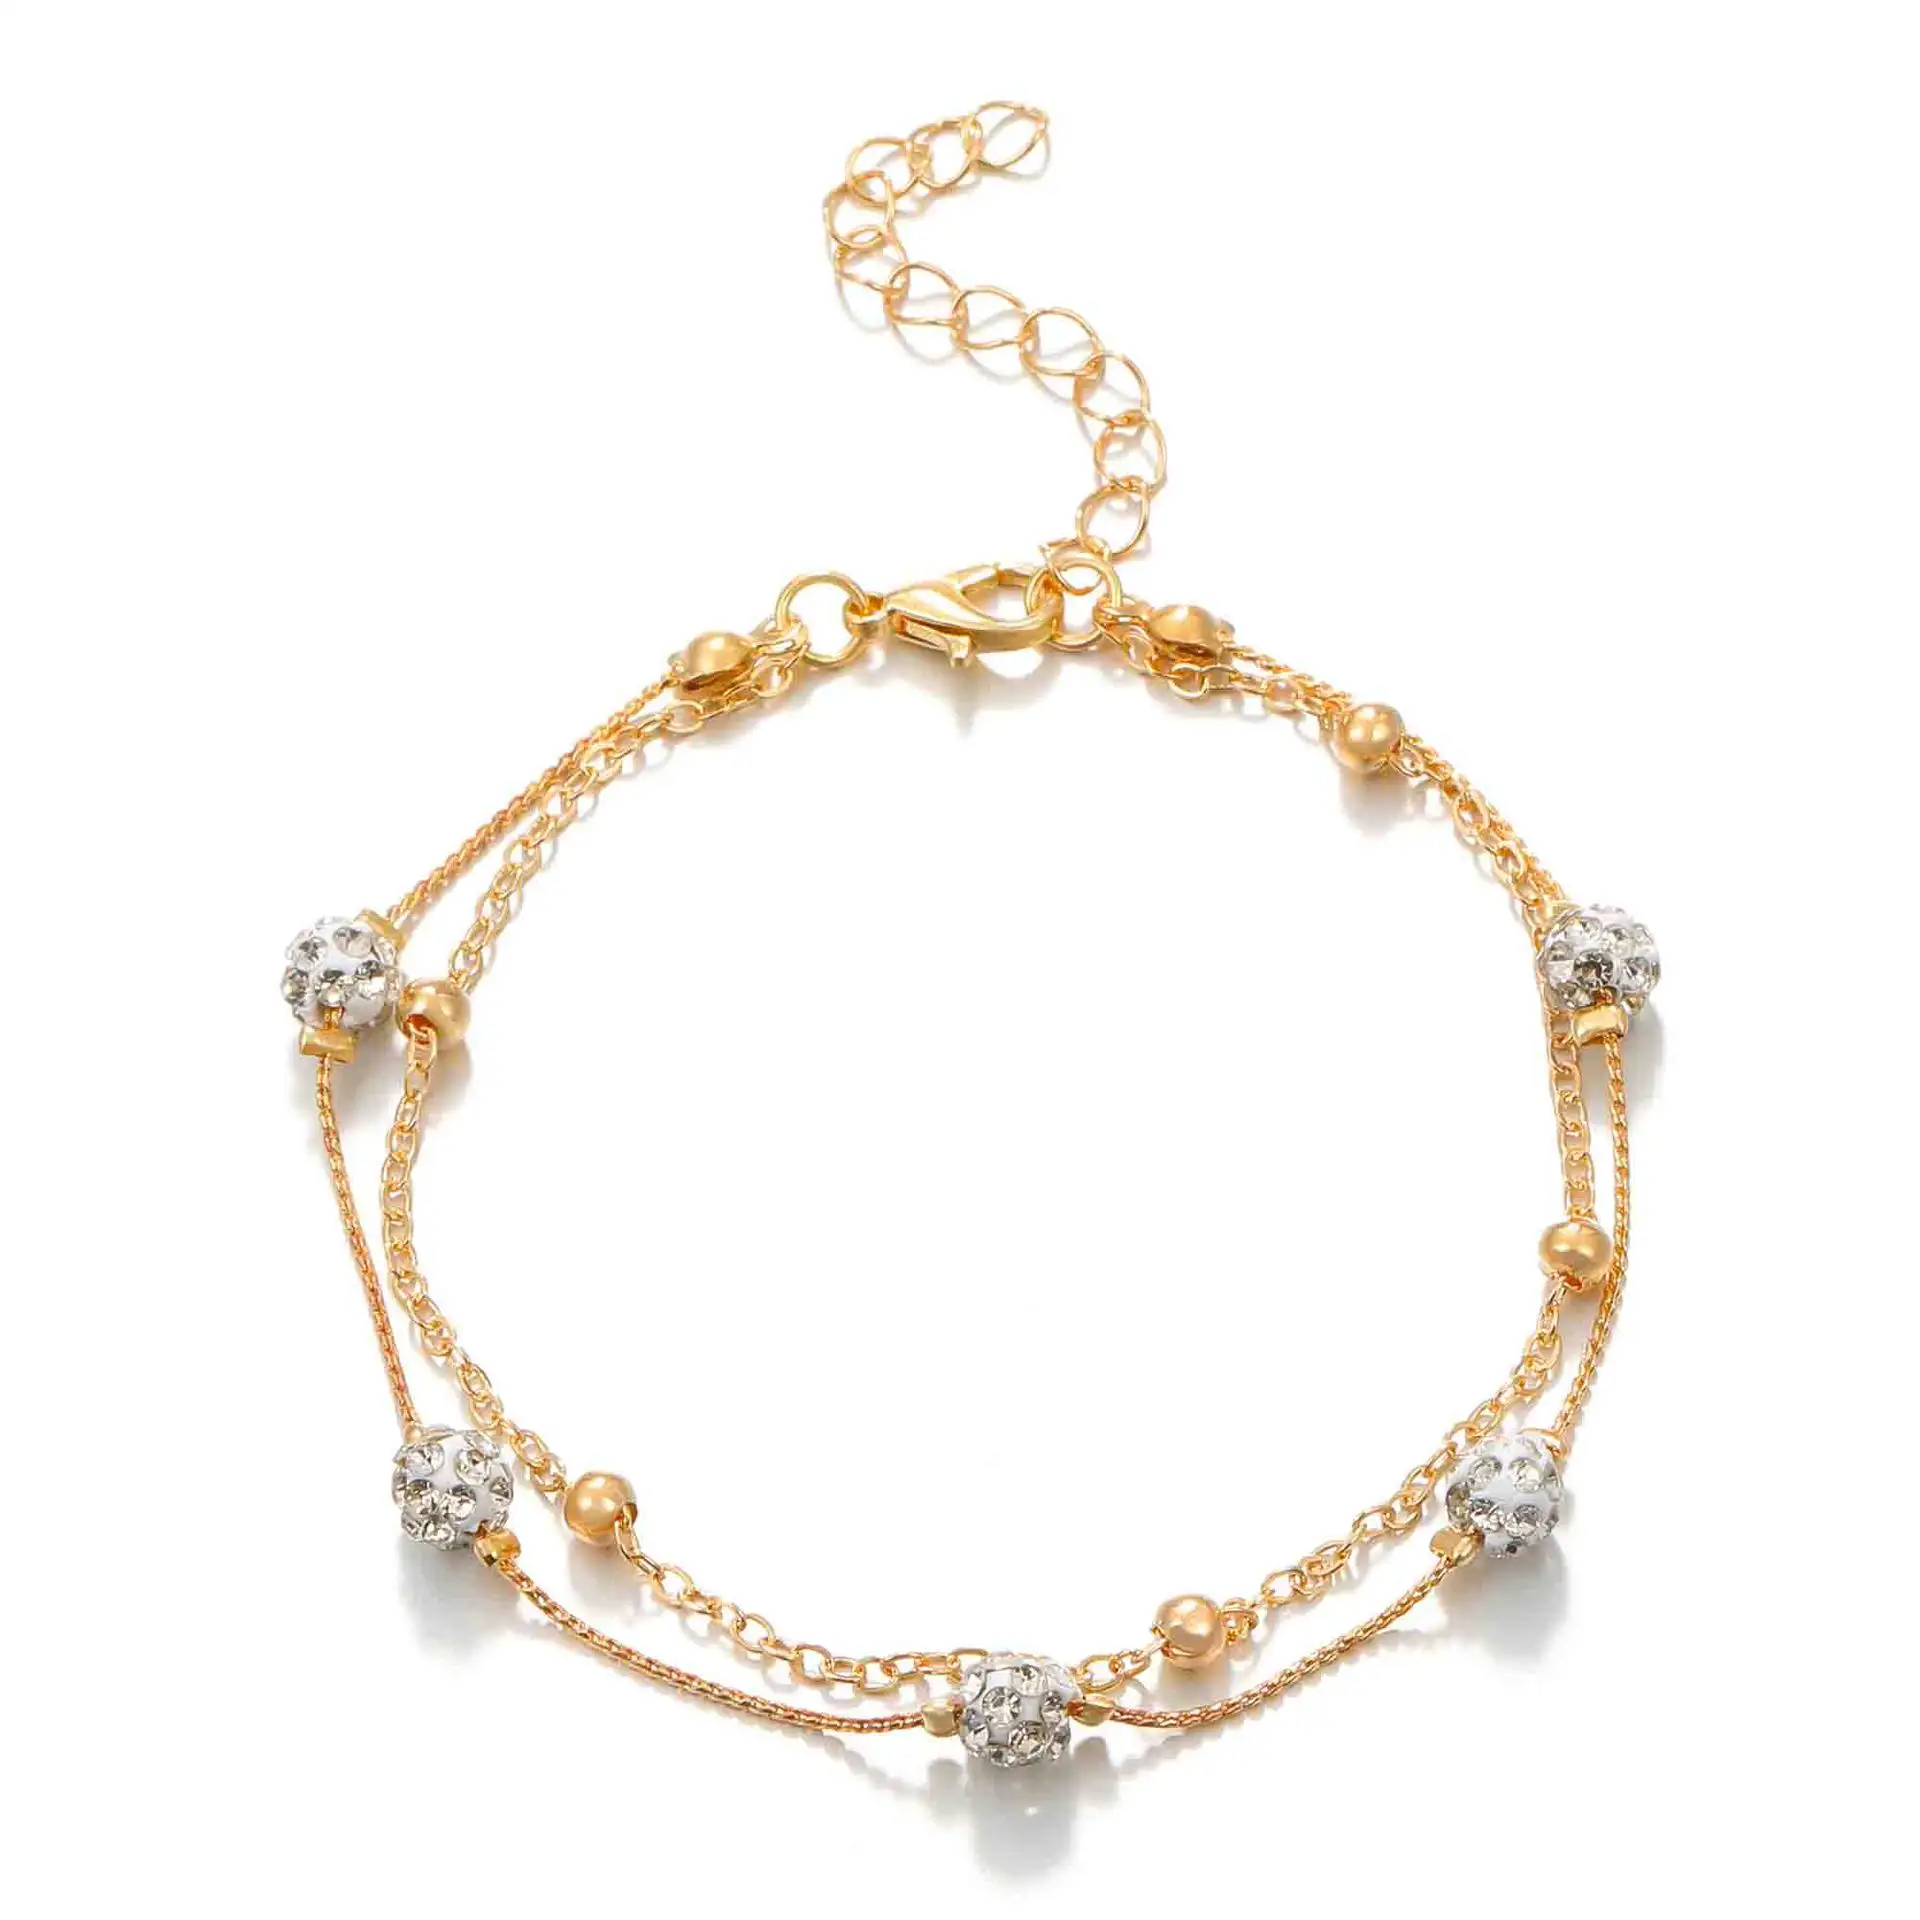 Gelang kaki lapis ganda mode gelang kaki ornamen bola kristal rantai tembaga berlapis emas 18K untuk perhiasan wanita